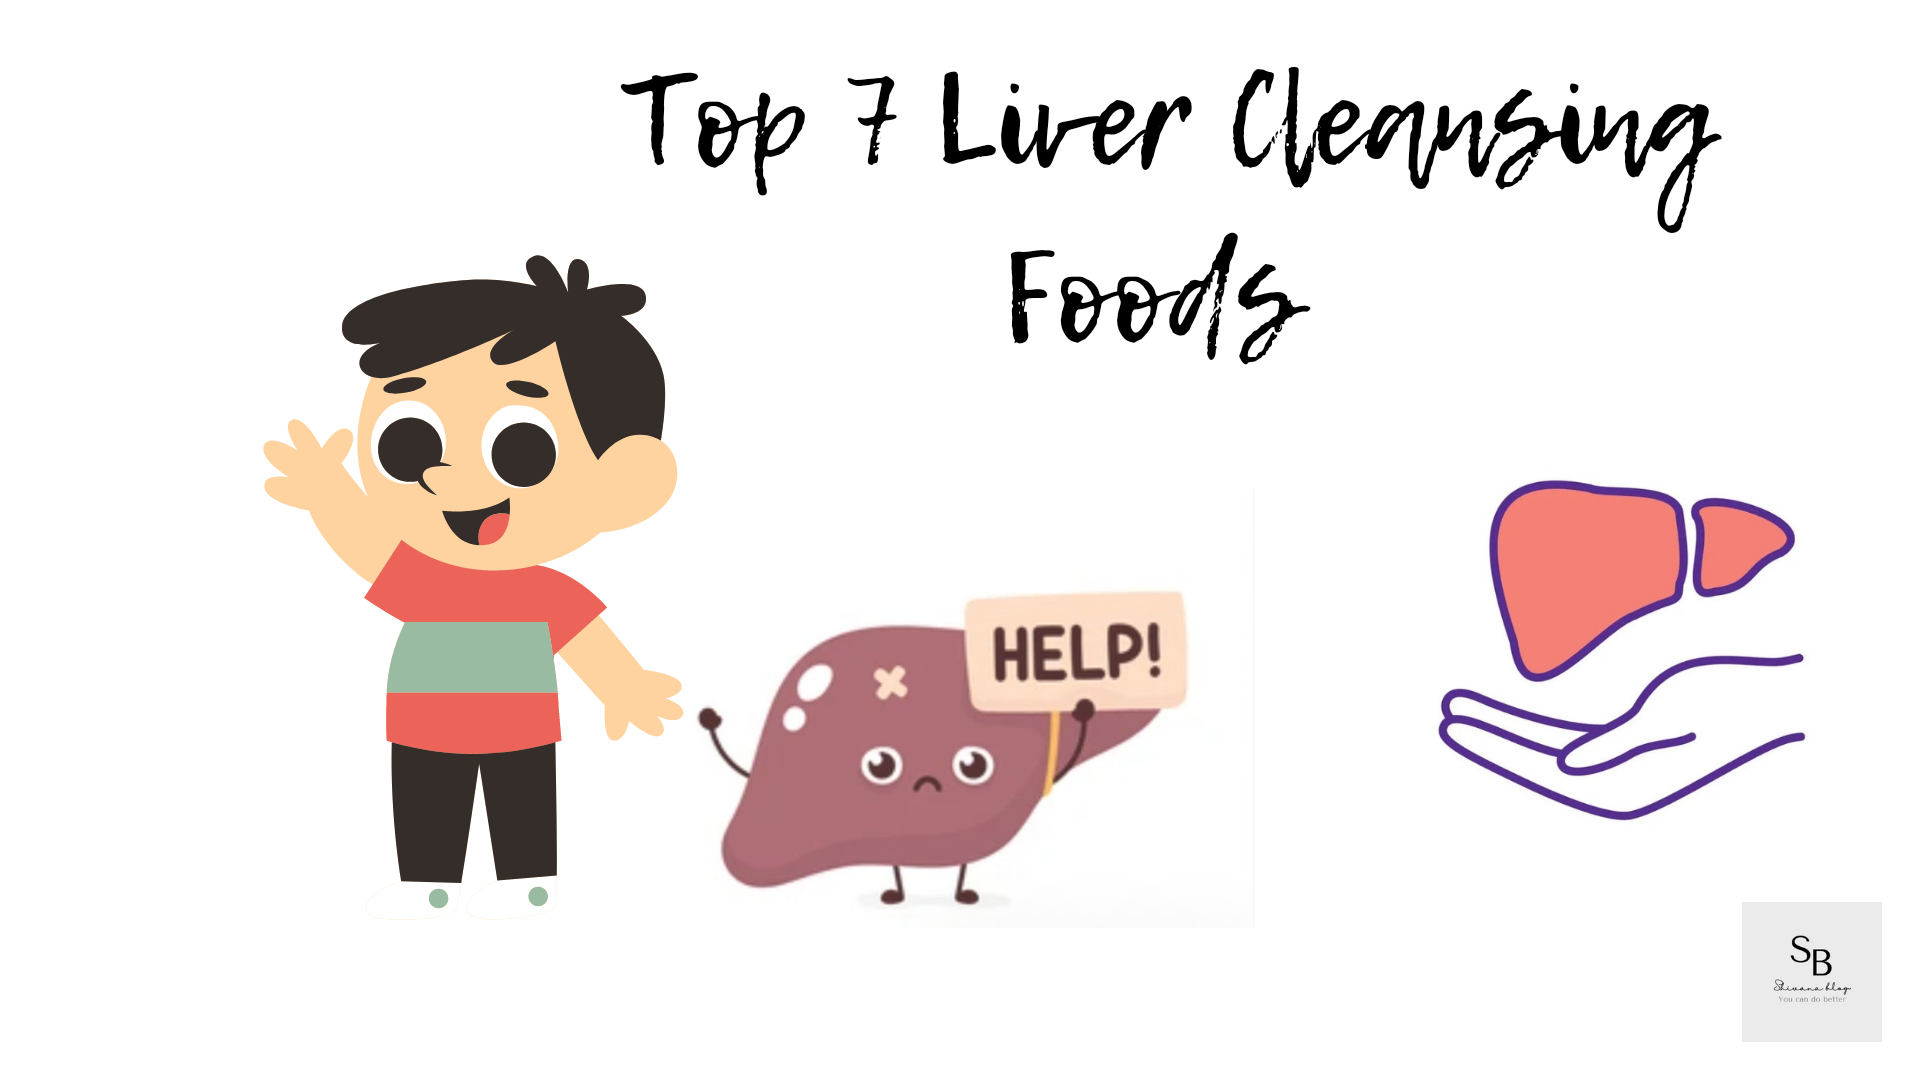 Johnny Orlando Xxxvideos Com - Top 7 Liver Cleansing Foods - Shivana Blog